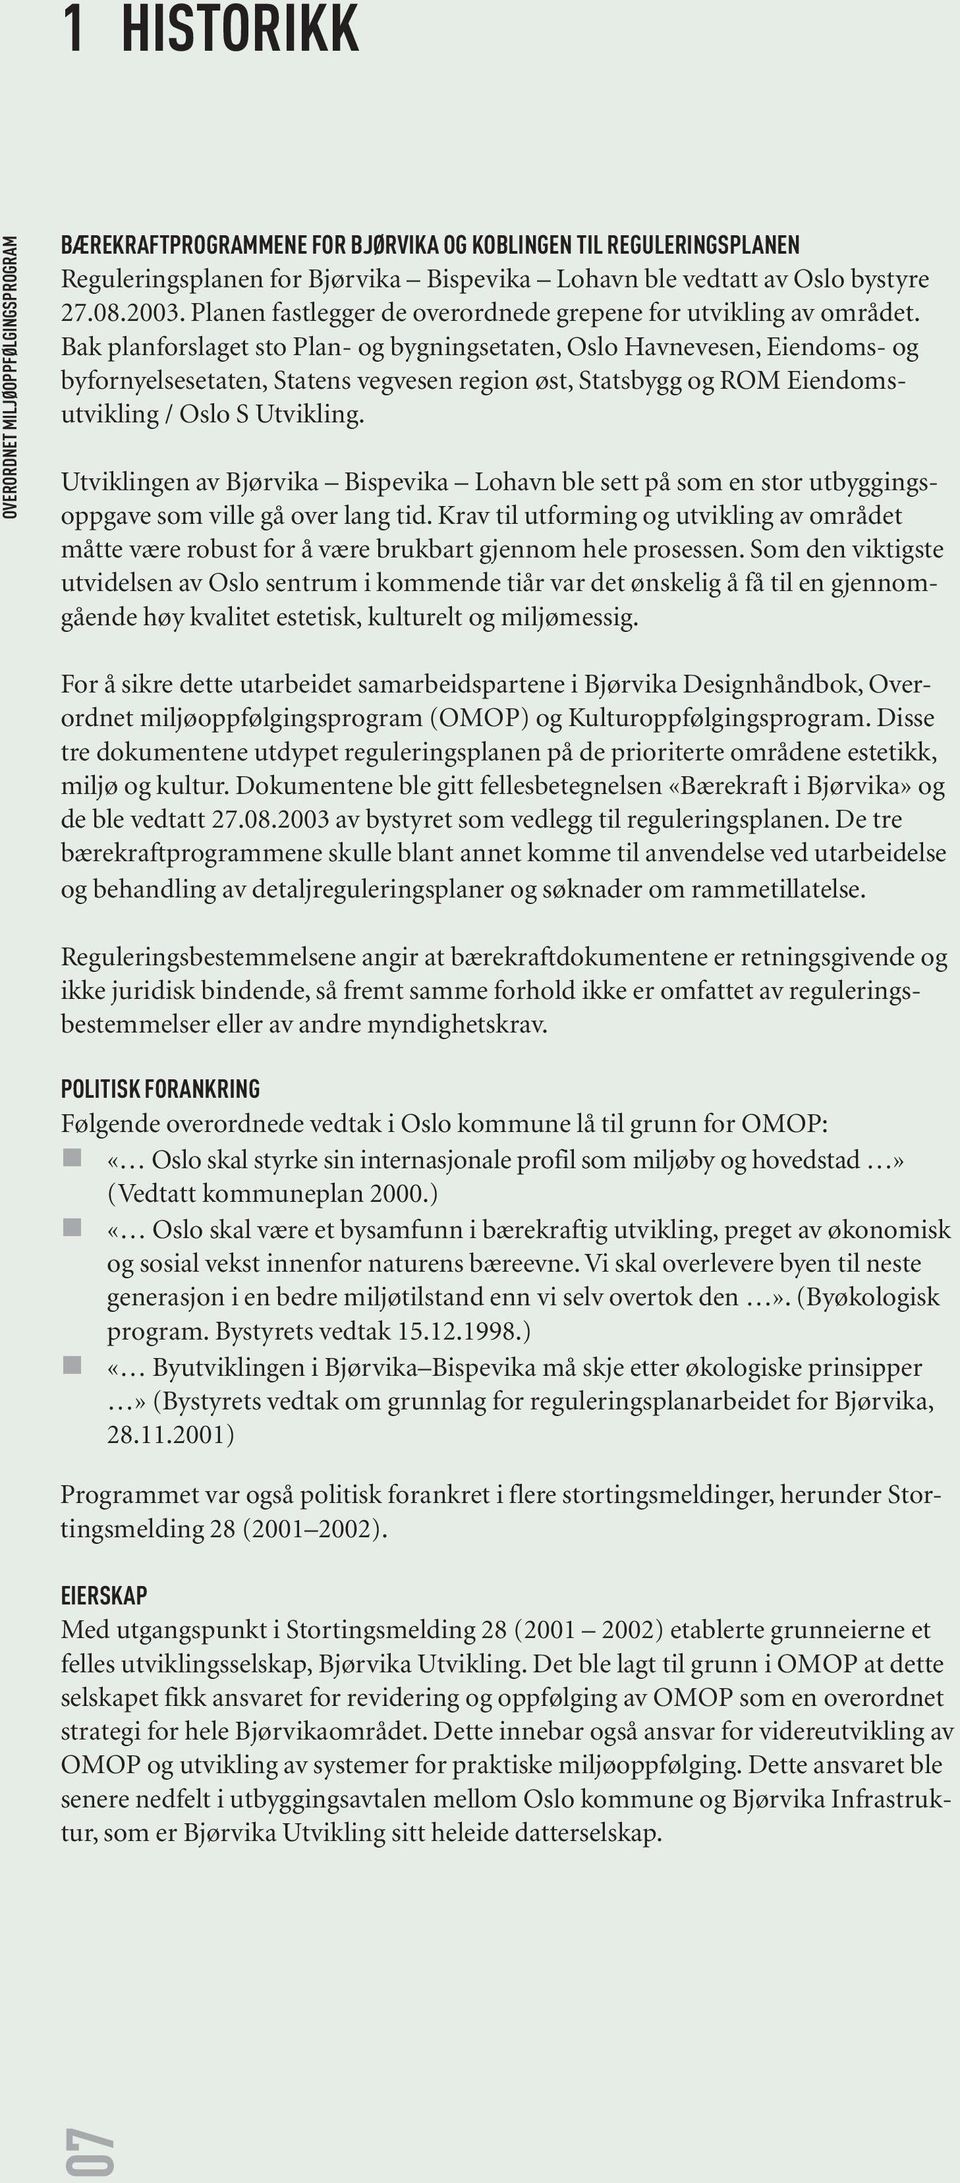 Bak planforslaget sto Plan- og bygningsetaten, Oslo Havnevesen, Eiendoms- og byfornyelsesetaten, Statens vegvesen region øst, Statsbygg og ROM Eiendomsutvikling / Oslo S Utvikling.